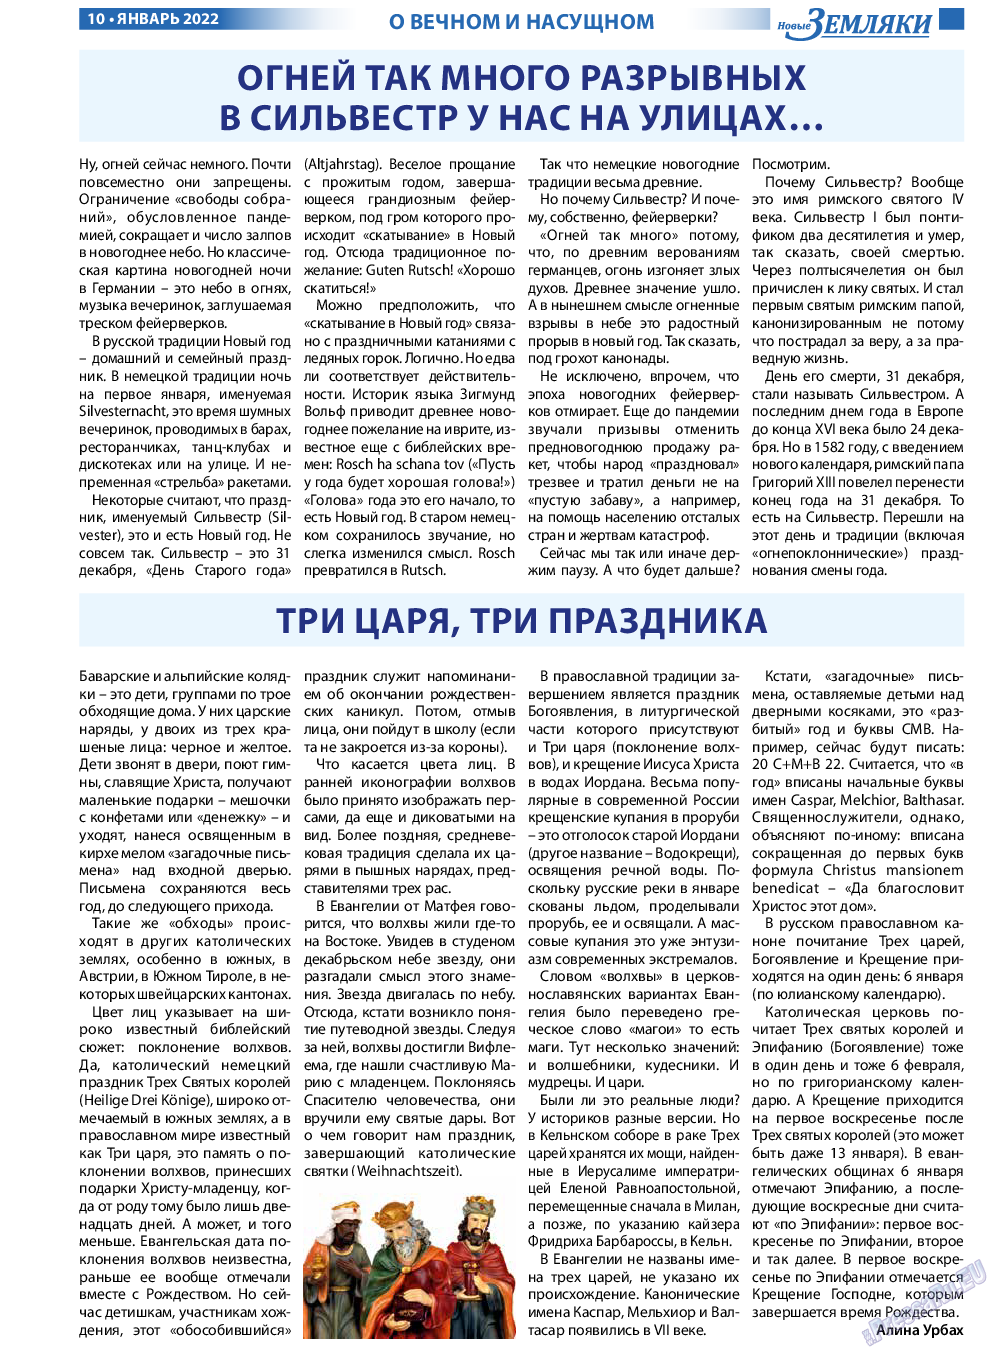 Новые Земляки, газета. 2022 №1 стр.10